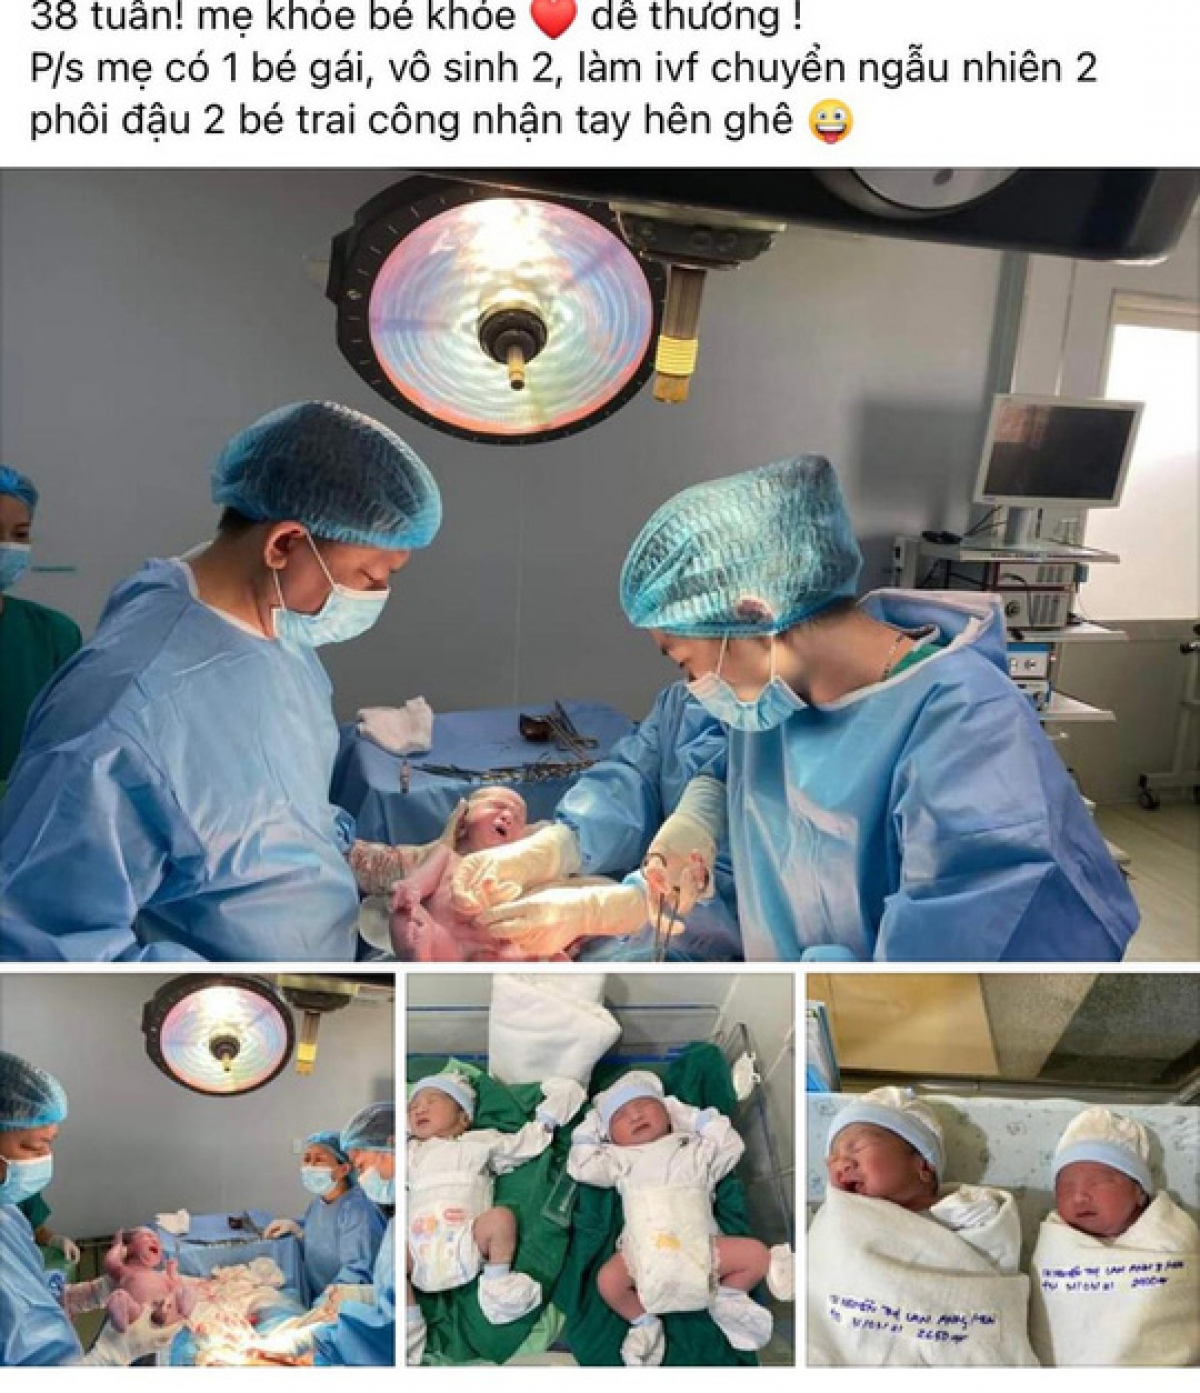 Hình ảnh 2 em bé song sinh được đính kèm câu chuyện của BS Khoa là ảnh cũ 